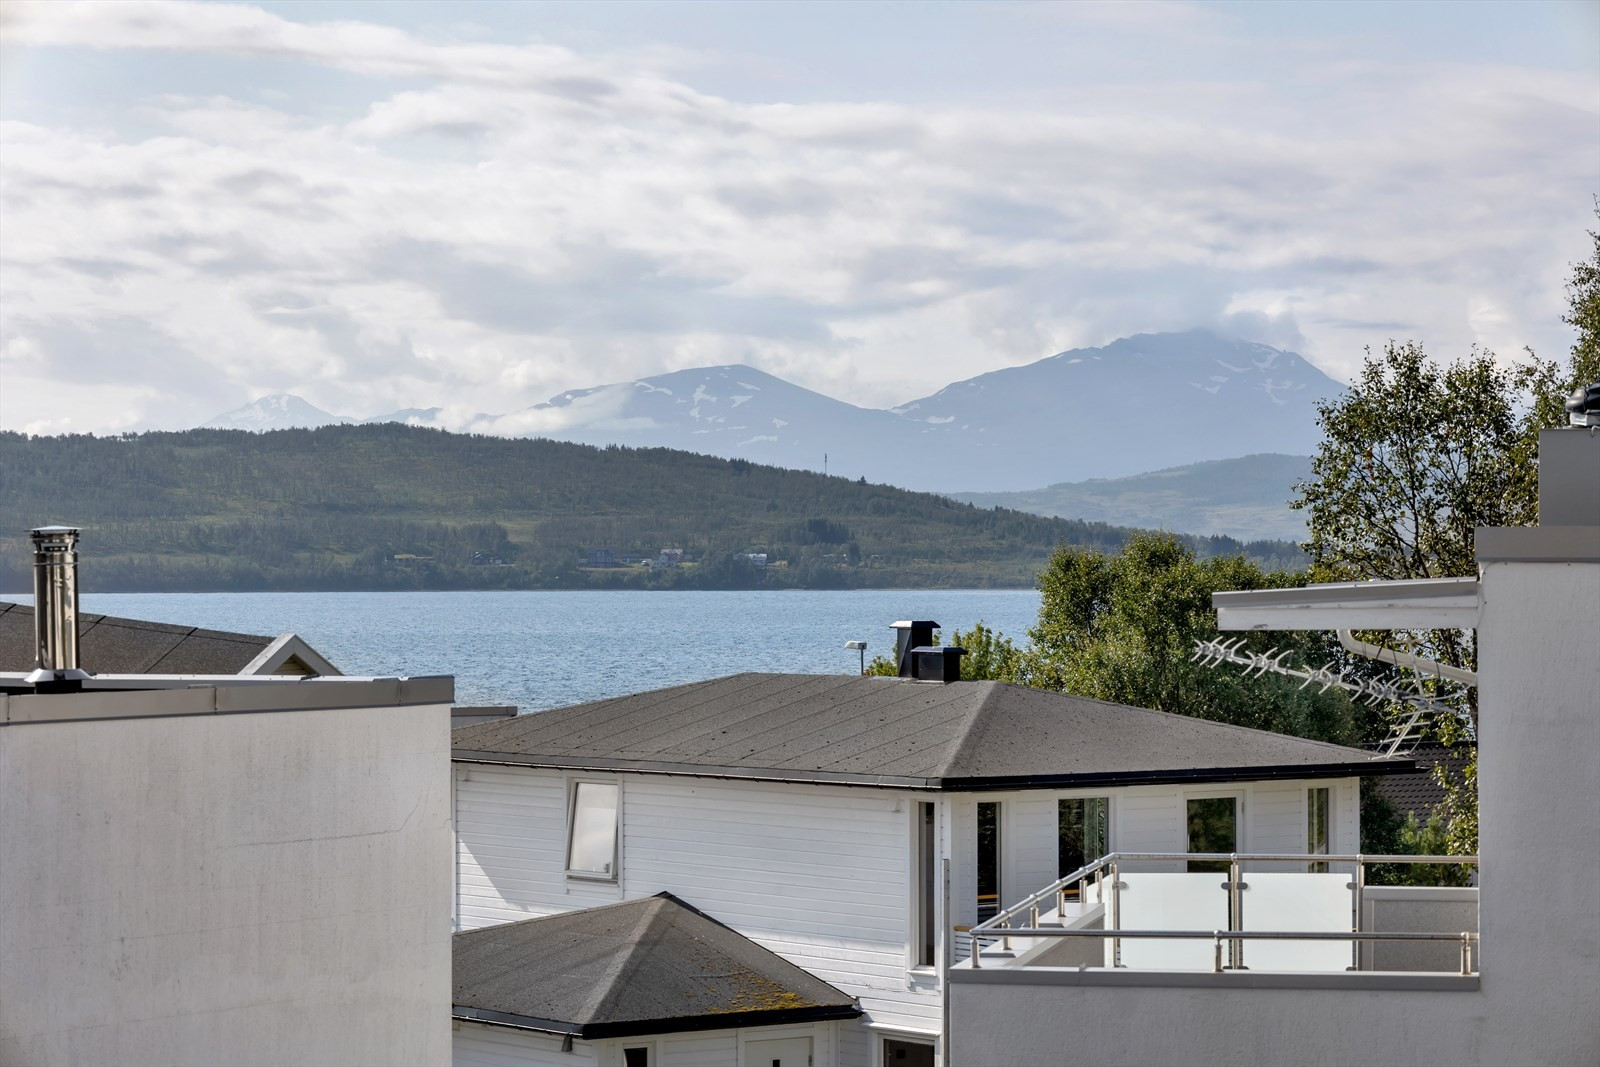 Nydelig utsikt mot Håkøya, sundet og nærmiljøet